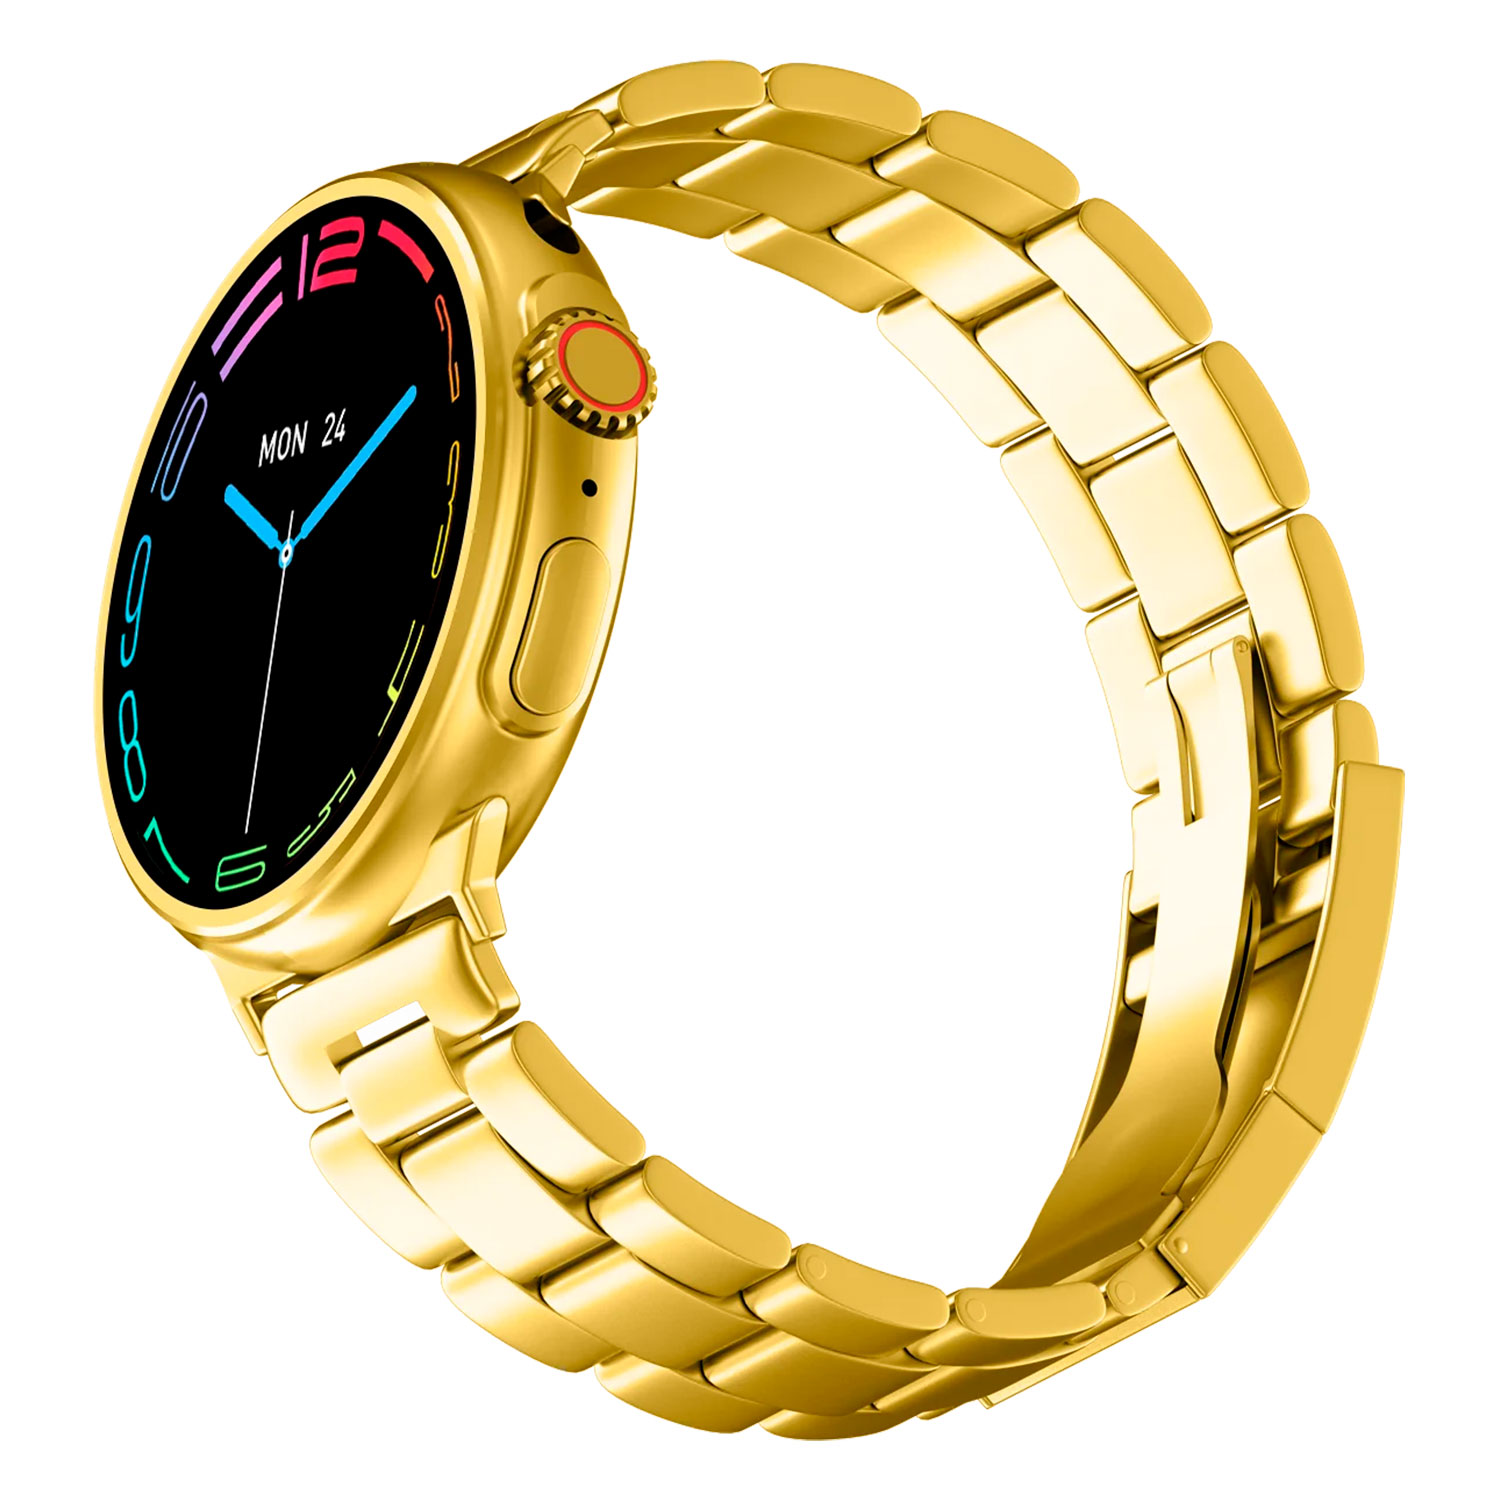 Smartwatch GS Wear G10 24K Golden Edition - Dourado